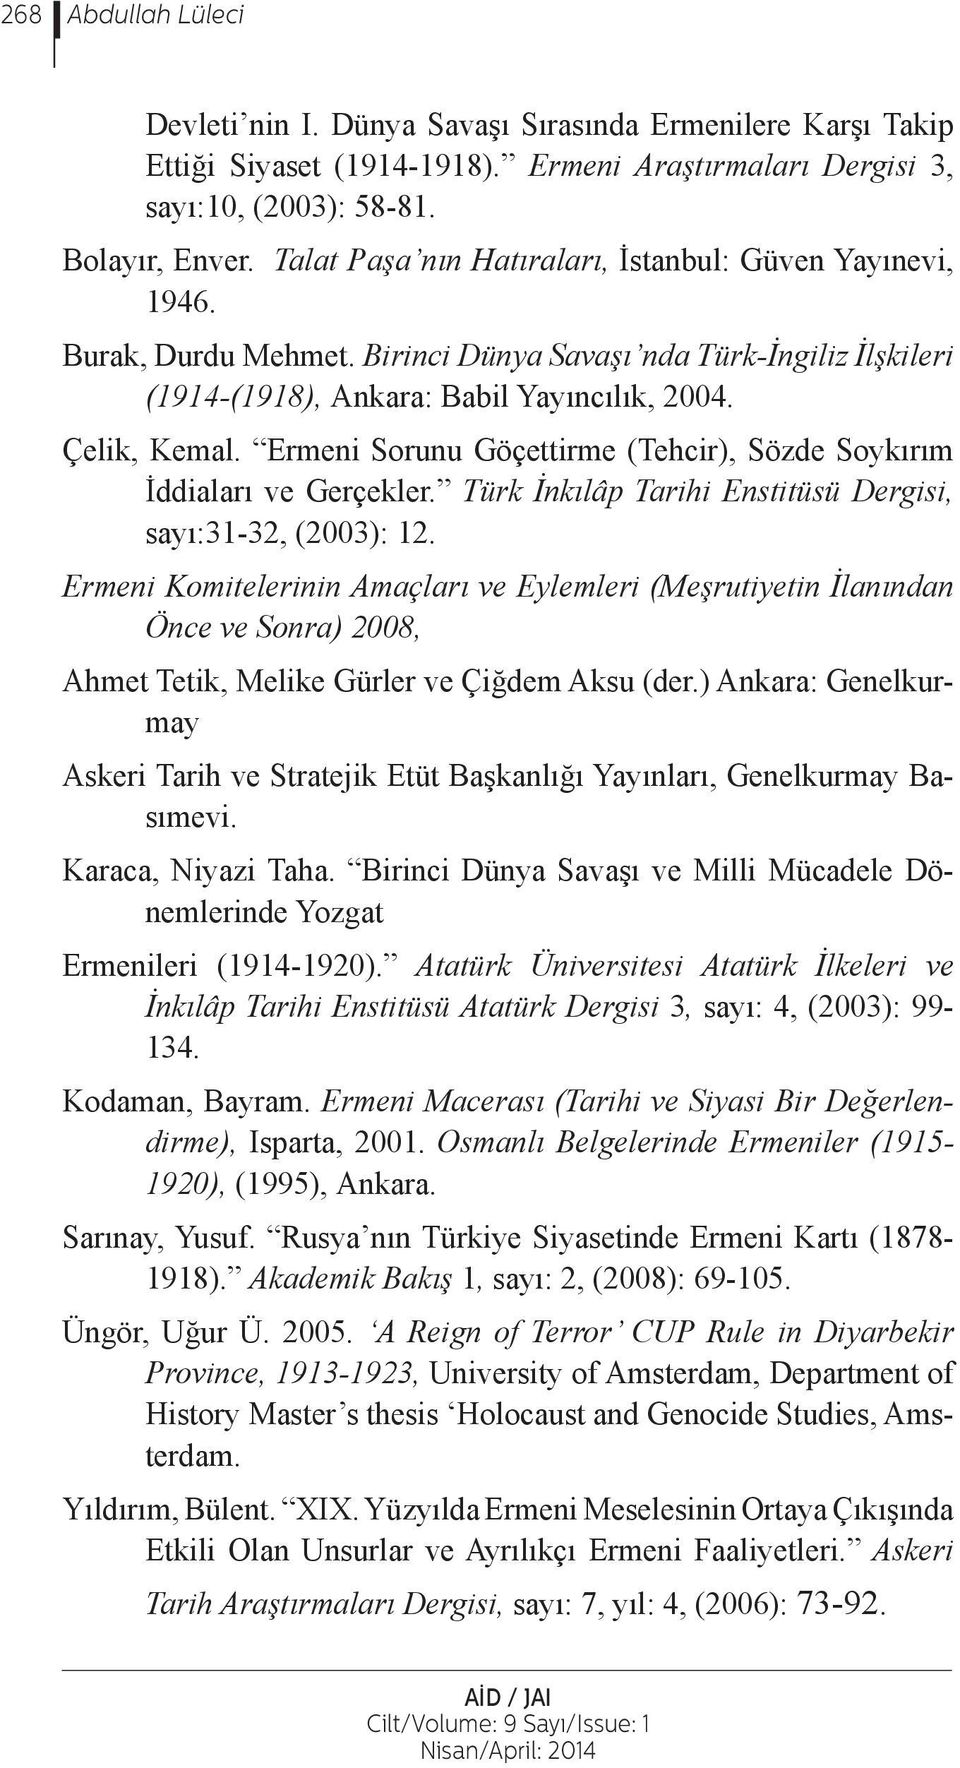 Ermeni Sorunu Göçettirme (Tehcir), Sözde Soykırım İddiaları ve Gerçekler. Türk İnkılâp Tarihi Enstitüsü Dergisi, sayı:31-32, (2003): 12.